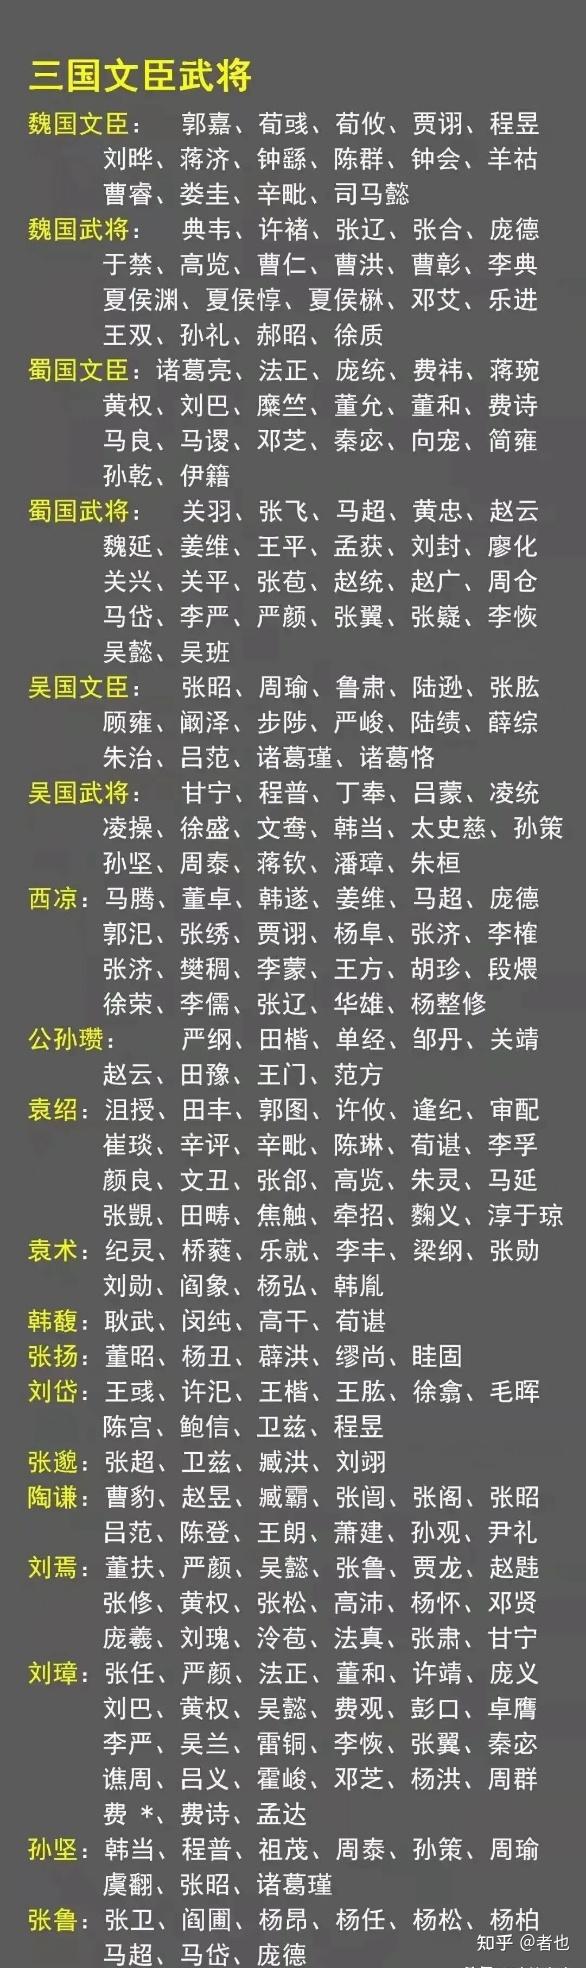 三国吴国人物名单图片